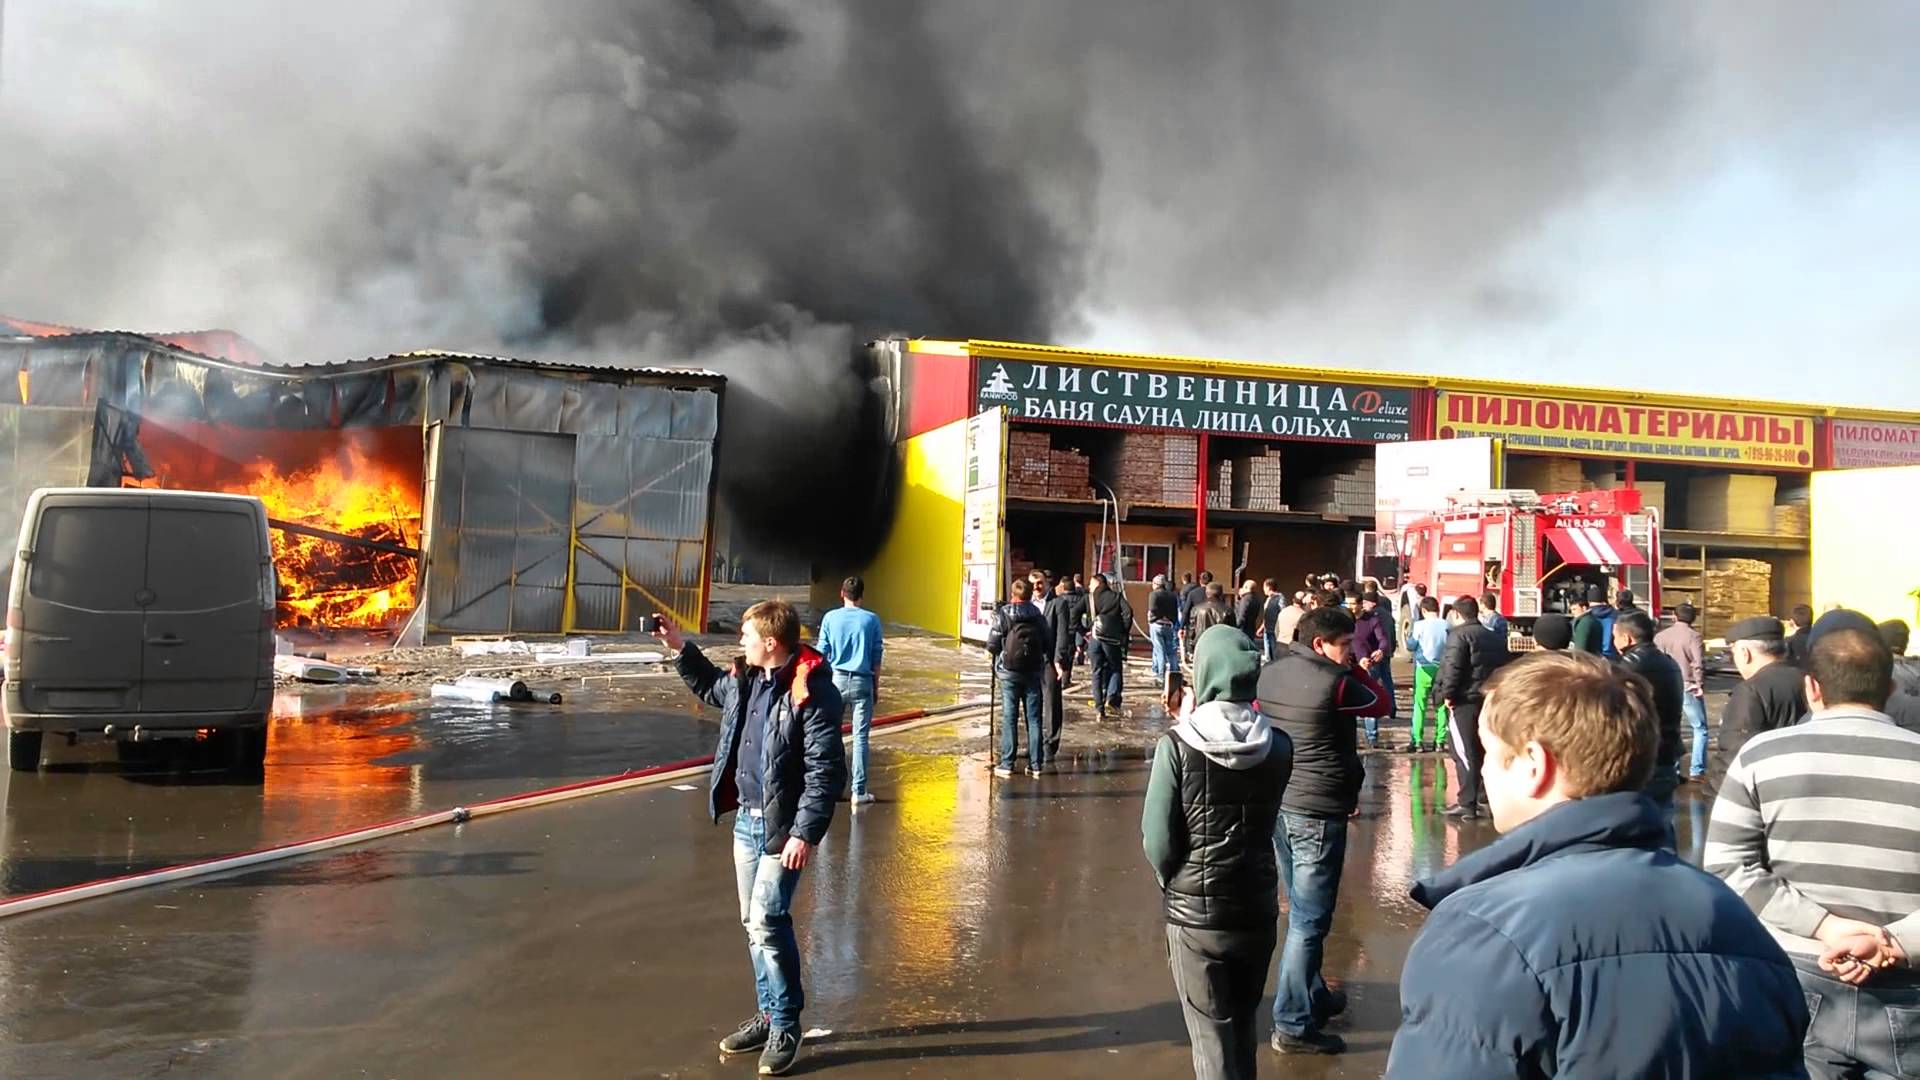 Паника в Москве: к тушению пожара на рынке "Синдика" подключили вертолеты - появились панорамные кадры